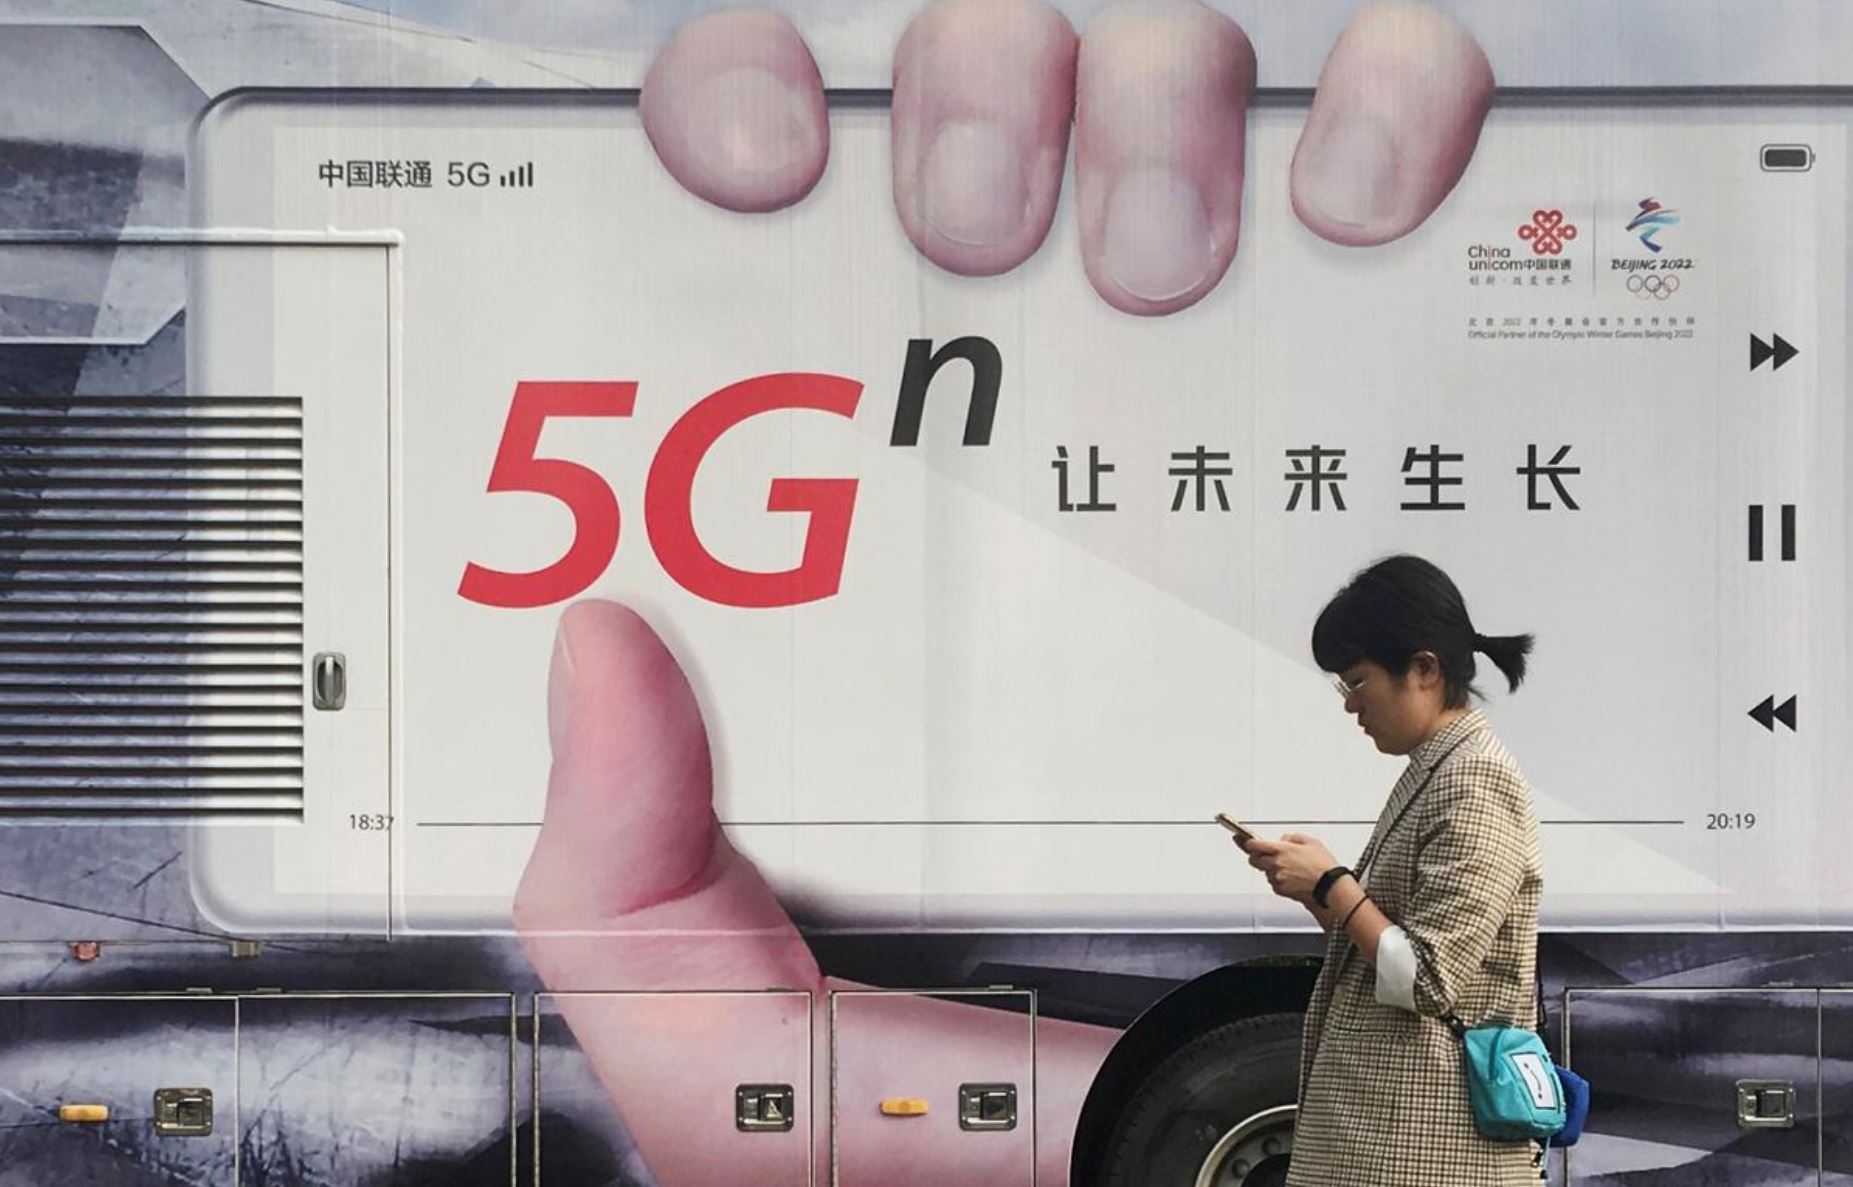 تصویر از اینترنت 5G رسما وارد چین می شود | بزرگترین شبکه 5G جهان